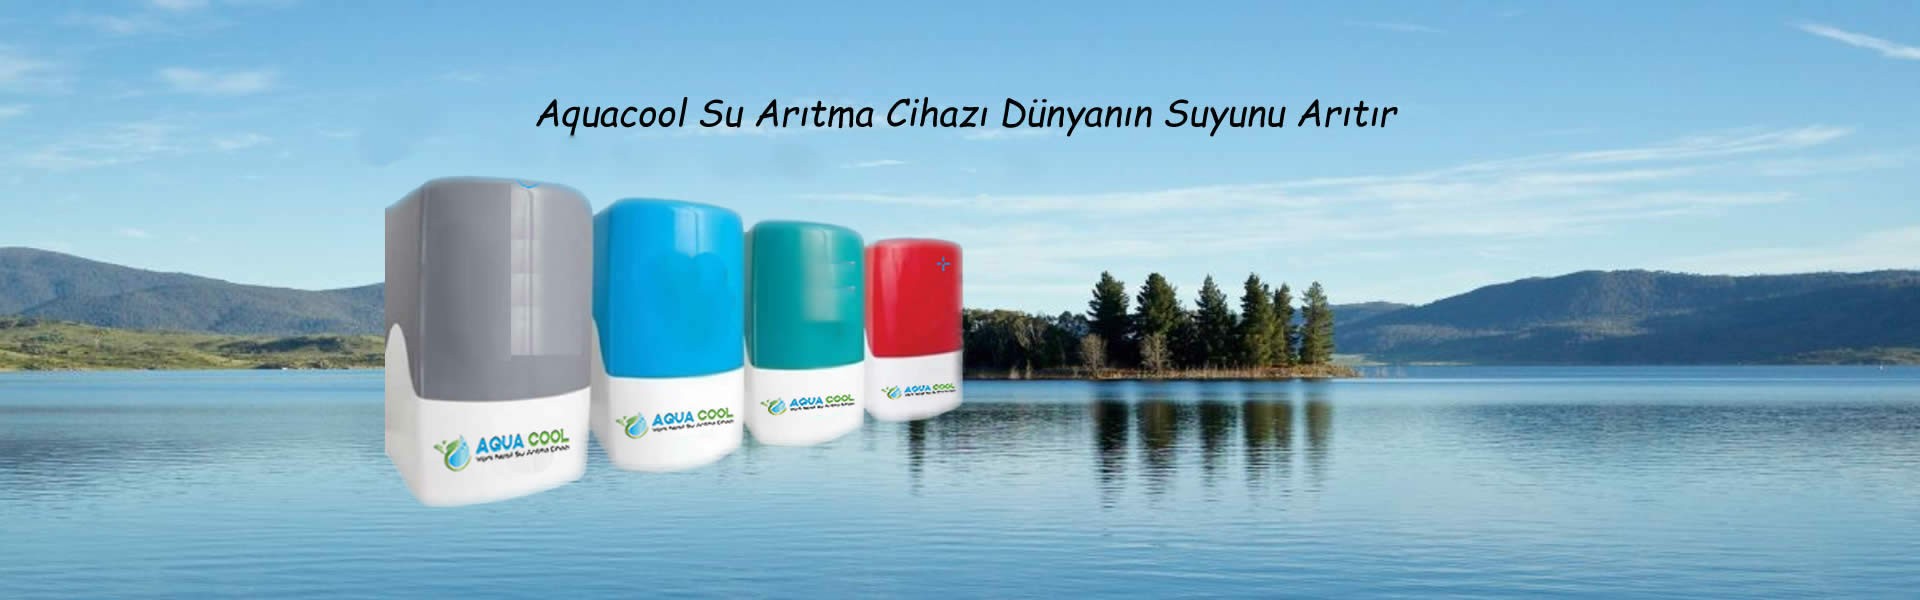 Aquacool Su Arıtma Cihazları